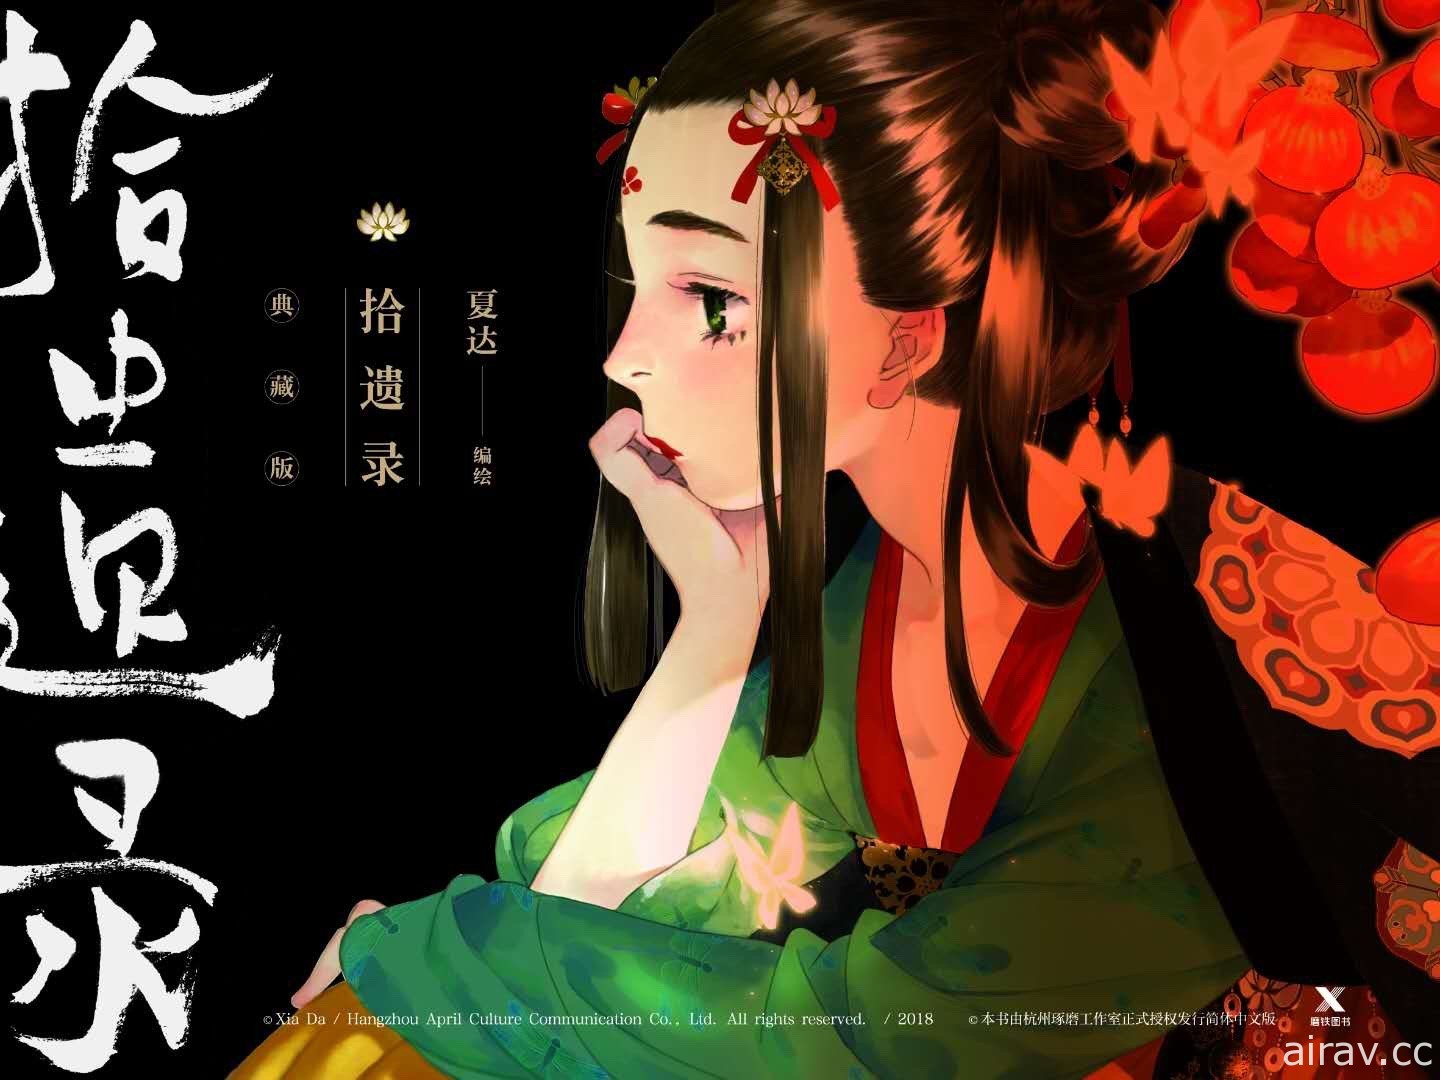 夏達最新作《拾遺錄》全彩漫畫單行本將於 5 月在中國上市